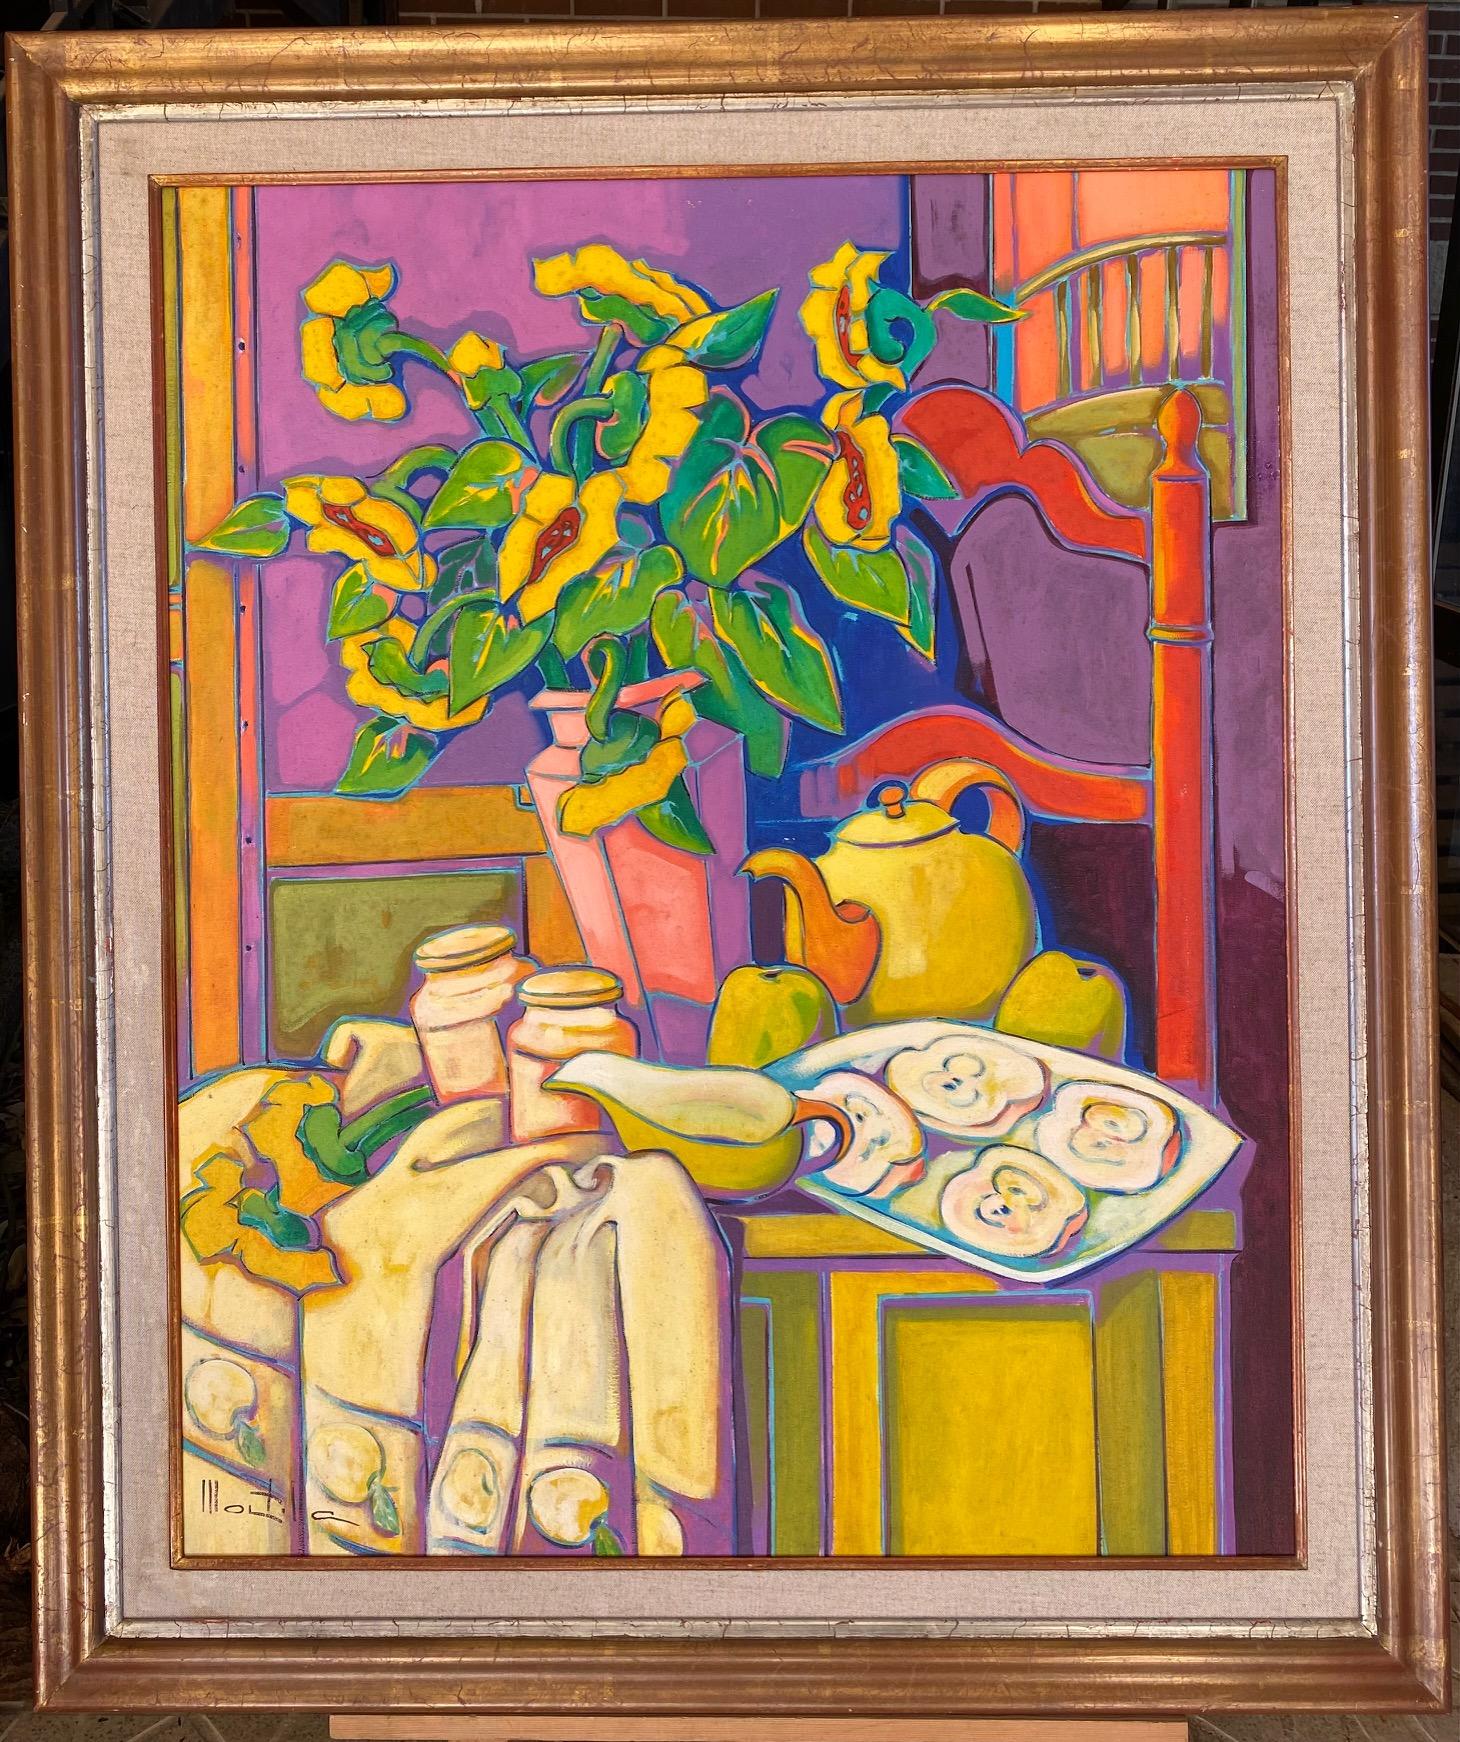 Des pommes. Huile sur lin. Nature morte expressionniste colorée : fleurs, pommes, théière - Painting de Chico Montilla